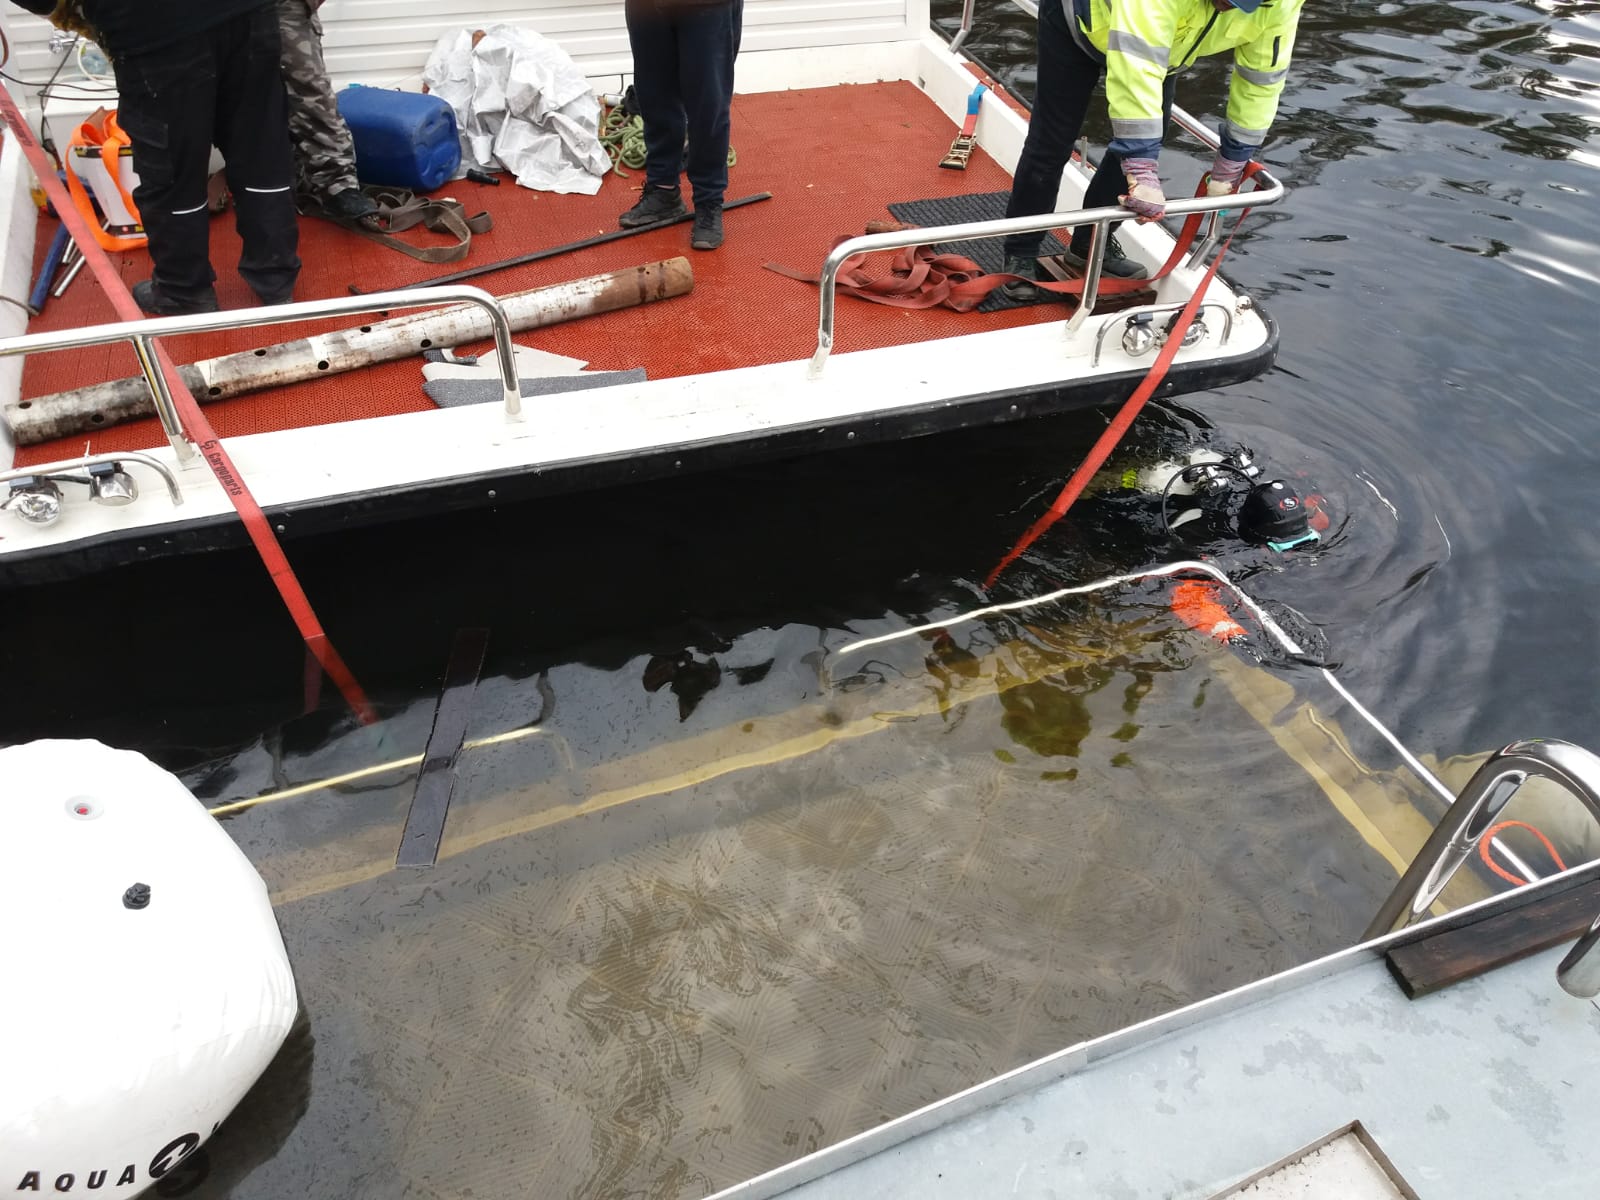 Vyzvednutí potopeného houseboatu, Radava - 5. a 6. 1. 2019 (14).jpg